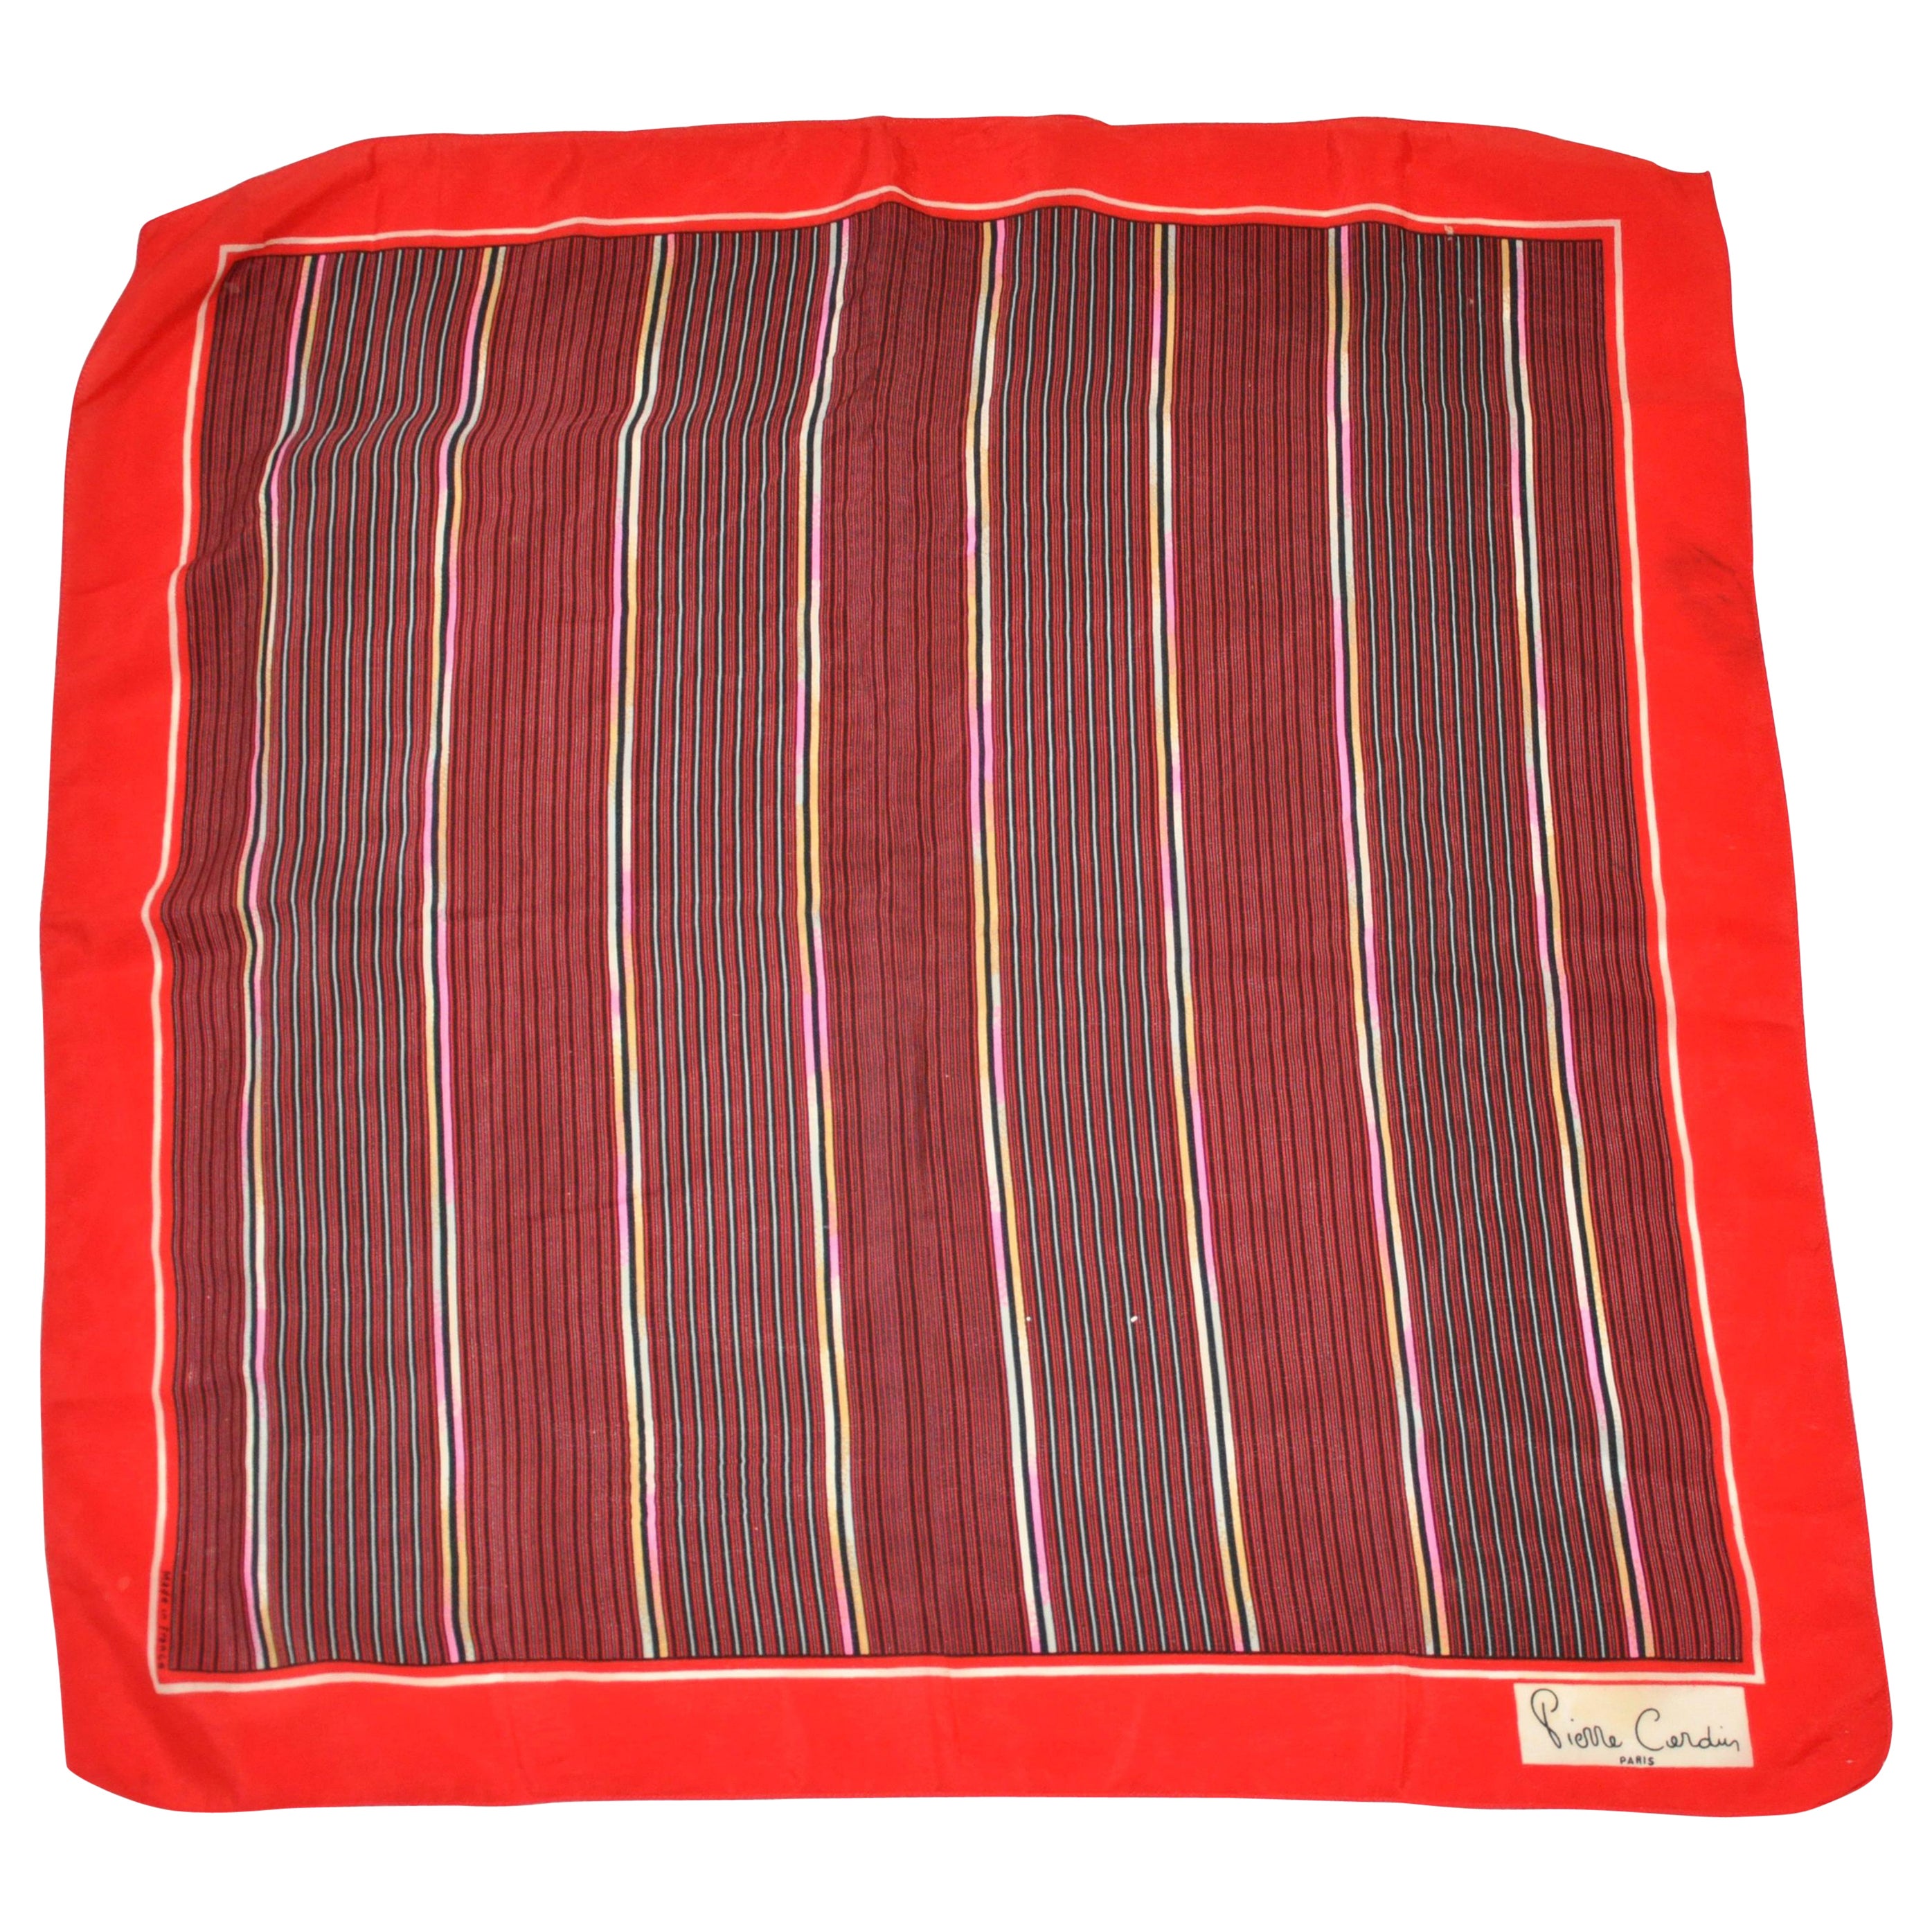 Seidenschal "Array of Stripes" von Pierre Cardin mit roten Rändern